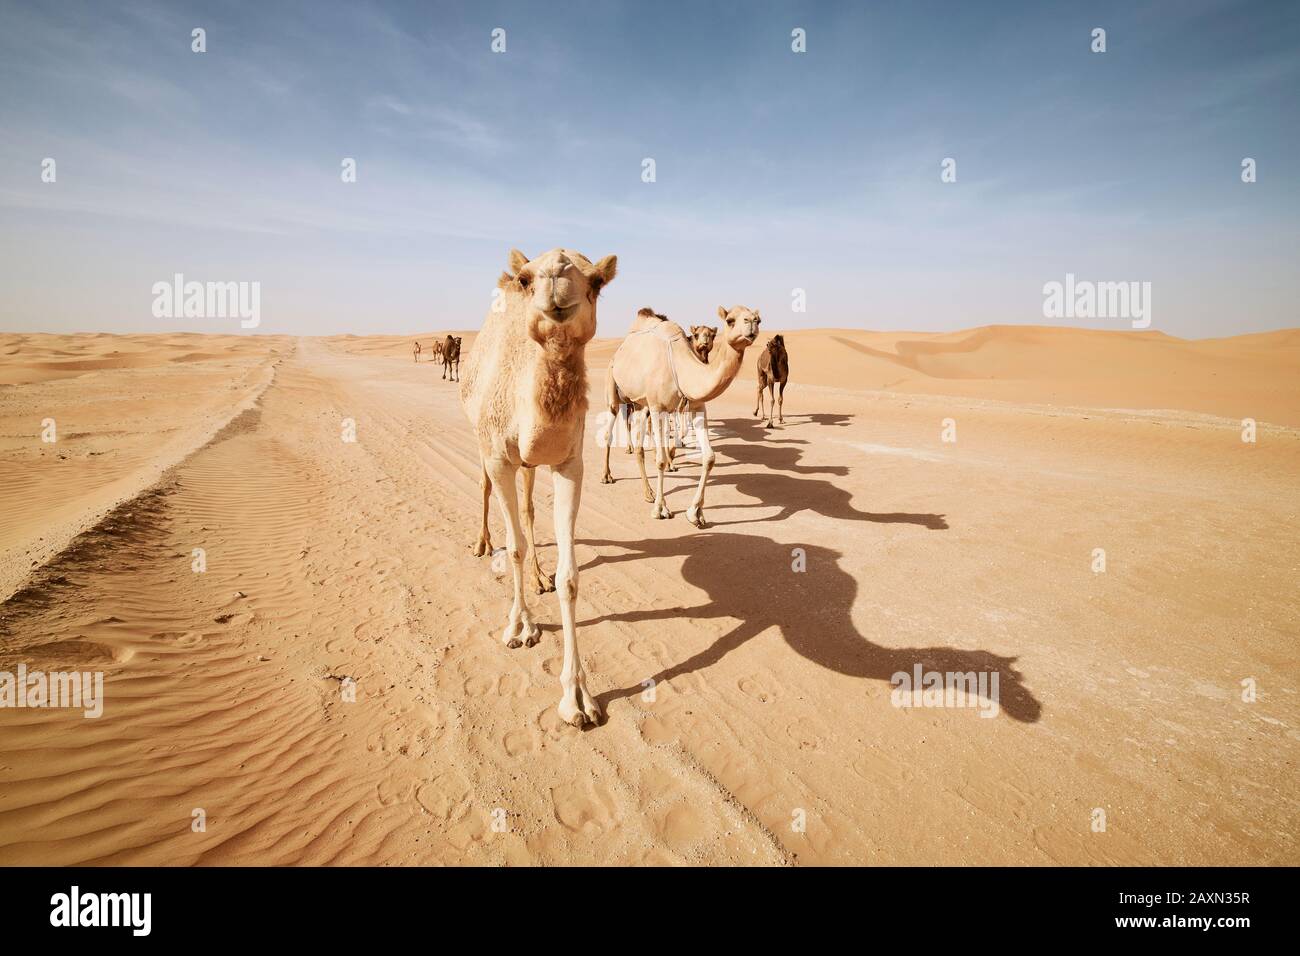 Troupeau de chameaux marchant sur la route du sable contre les dunes de sable dans le désert paysage. Abu Dhabi, Émirats Arabes Unis Banque D'Images